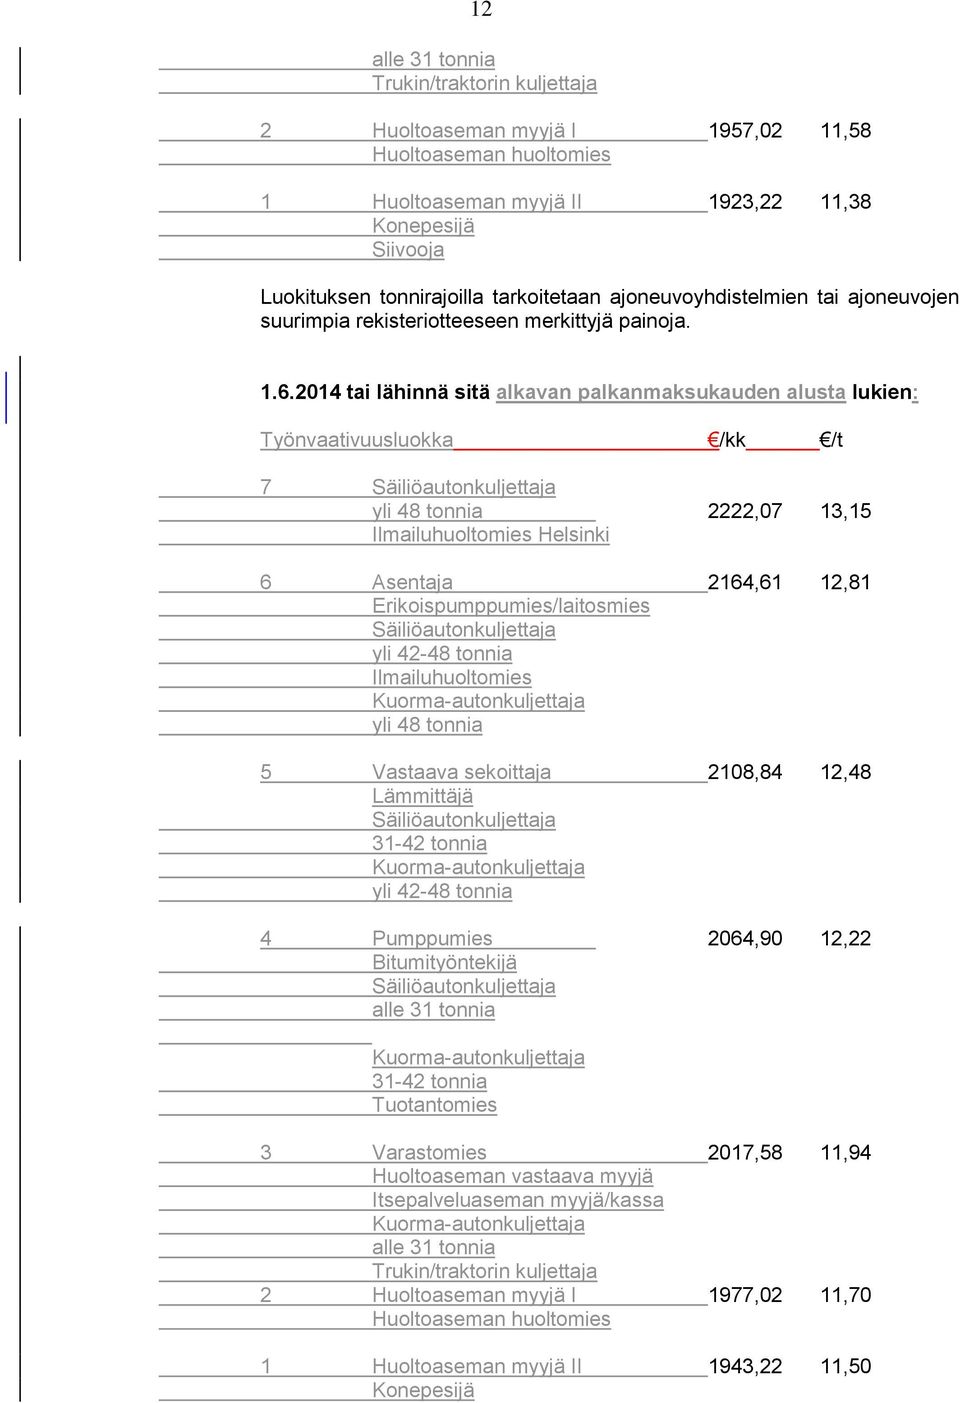 2014 tai lähinnä sitä alkavan palkanmaksukauden alusta lukien: Työnvaativuusluokka /kk /t 7 Säiliöautonkuljettaja yli 48 tonnia 2222,07 13,15 Ilmailuhuoltomies Helsinki 6 Asentaja 2164,61 12,81